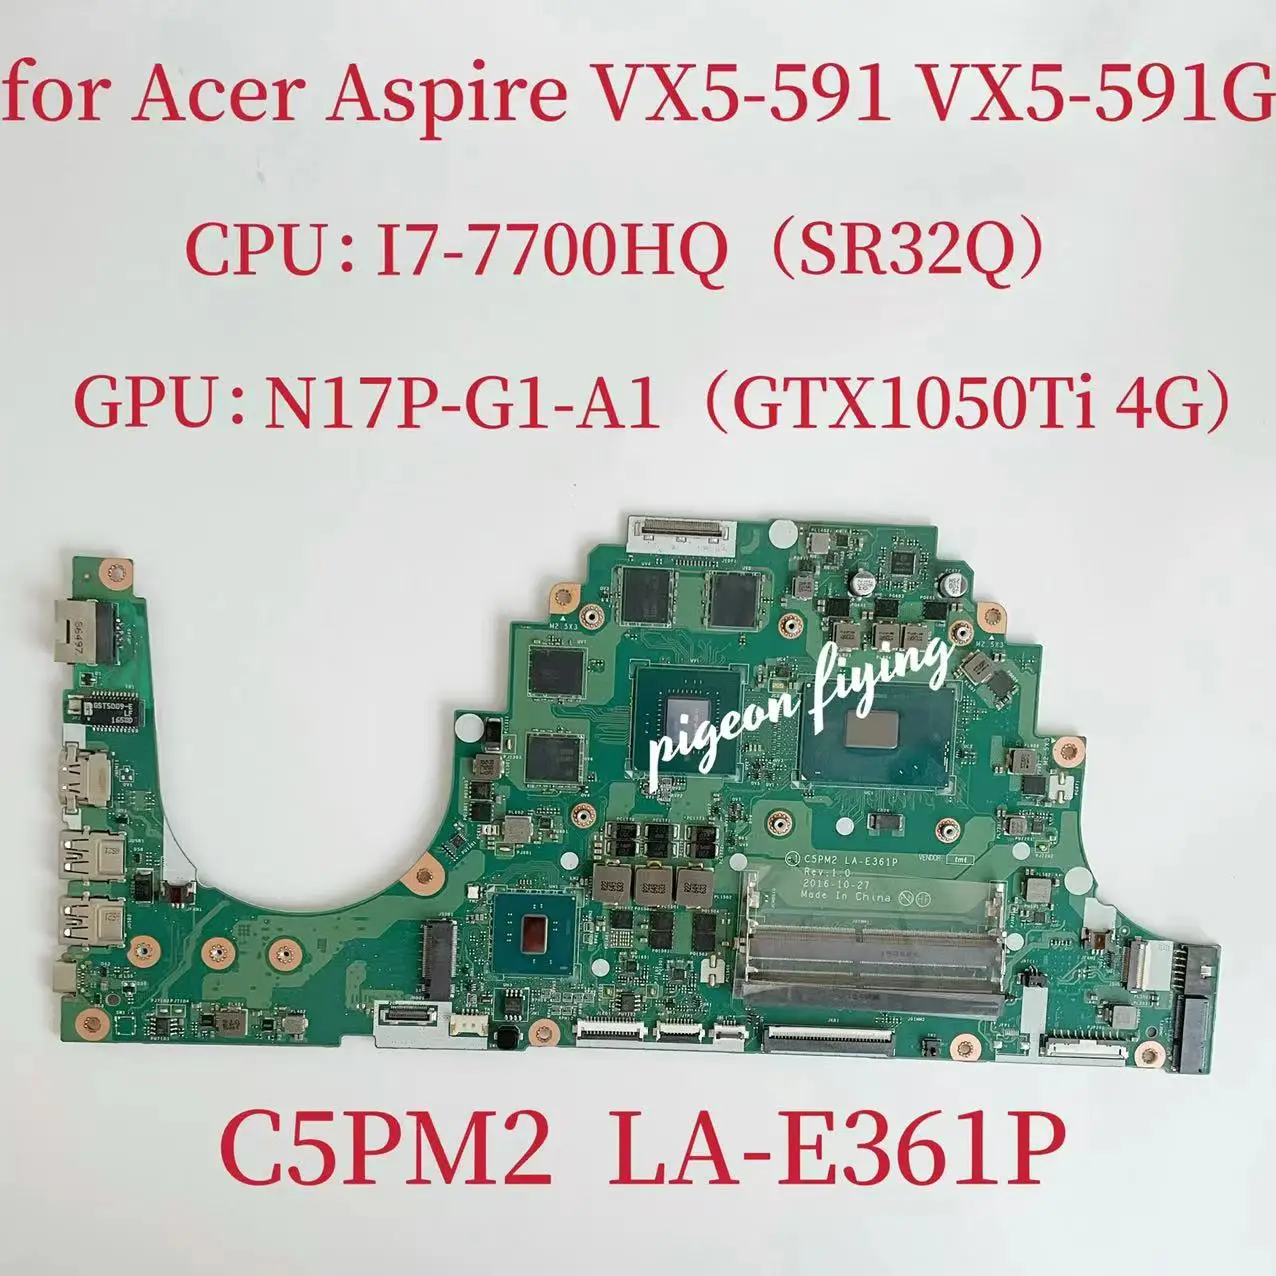 Материнская плата C5PM2 LA-E361P для ноутбука Acer Aspire VX5-591G Процессор: I7-7700HQ SR32Q Графический процессор: GTX1050TI 4 ГБ 100% тестирование-работает нормально